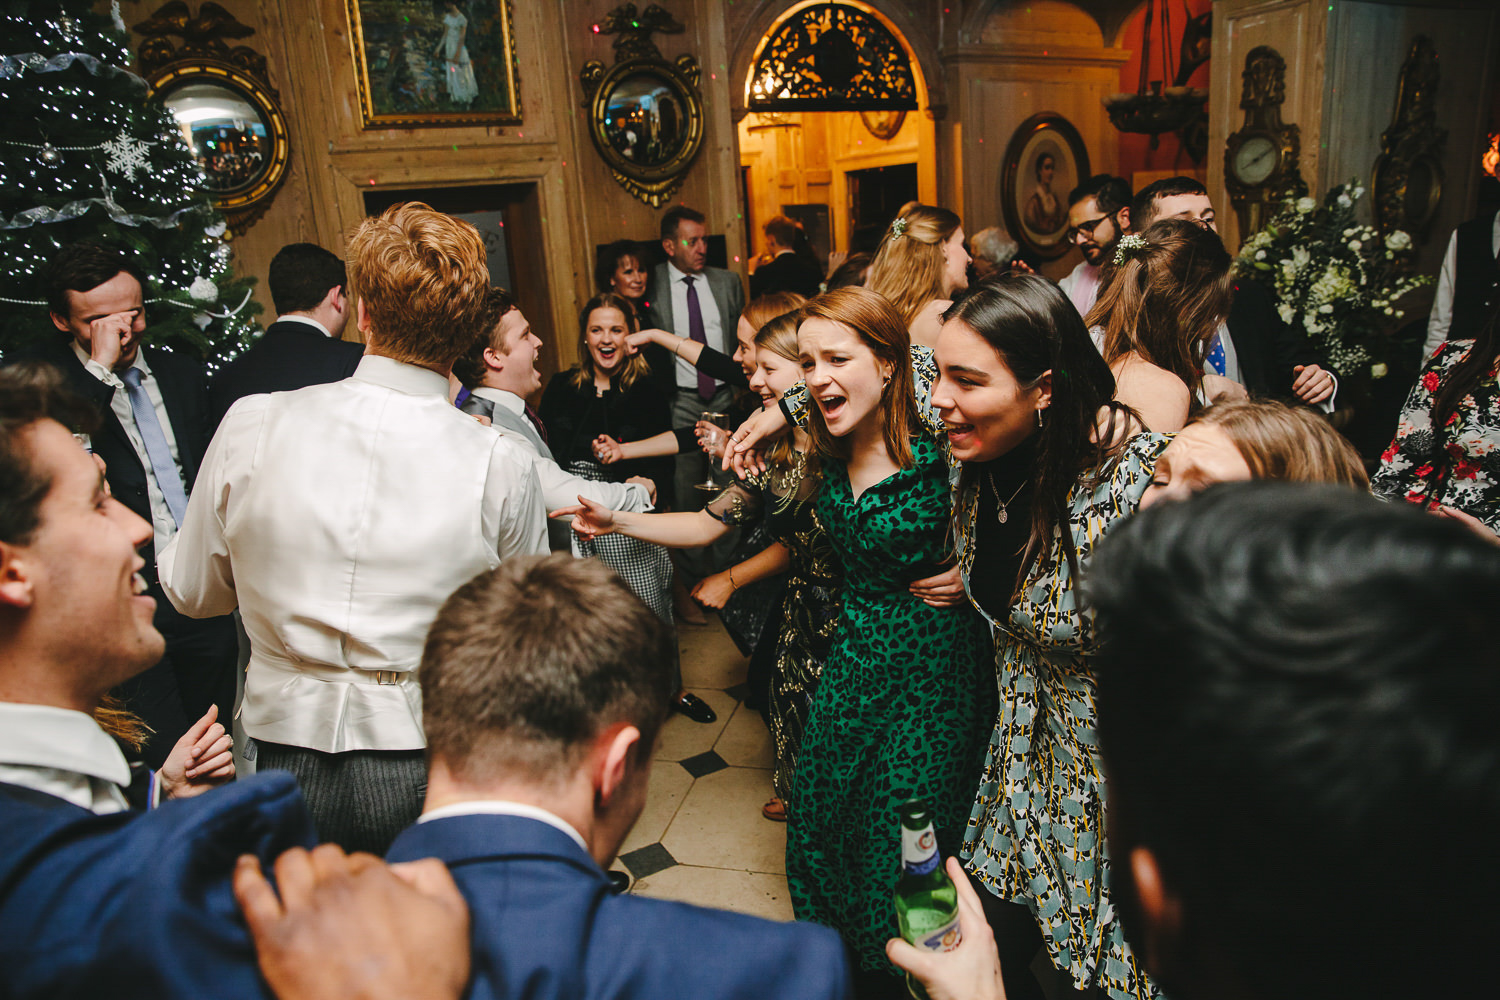 Wedding guests dancing, indoors, wedding venue